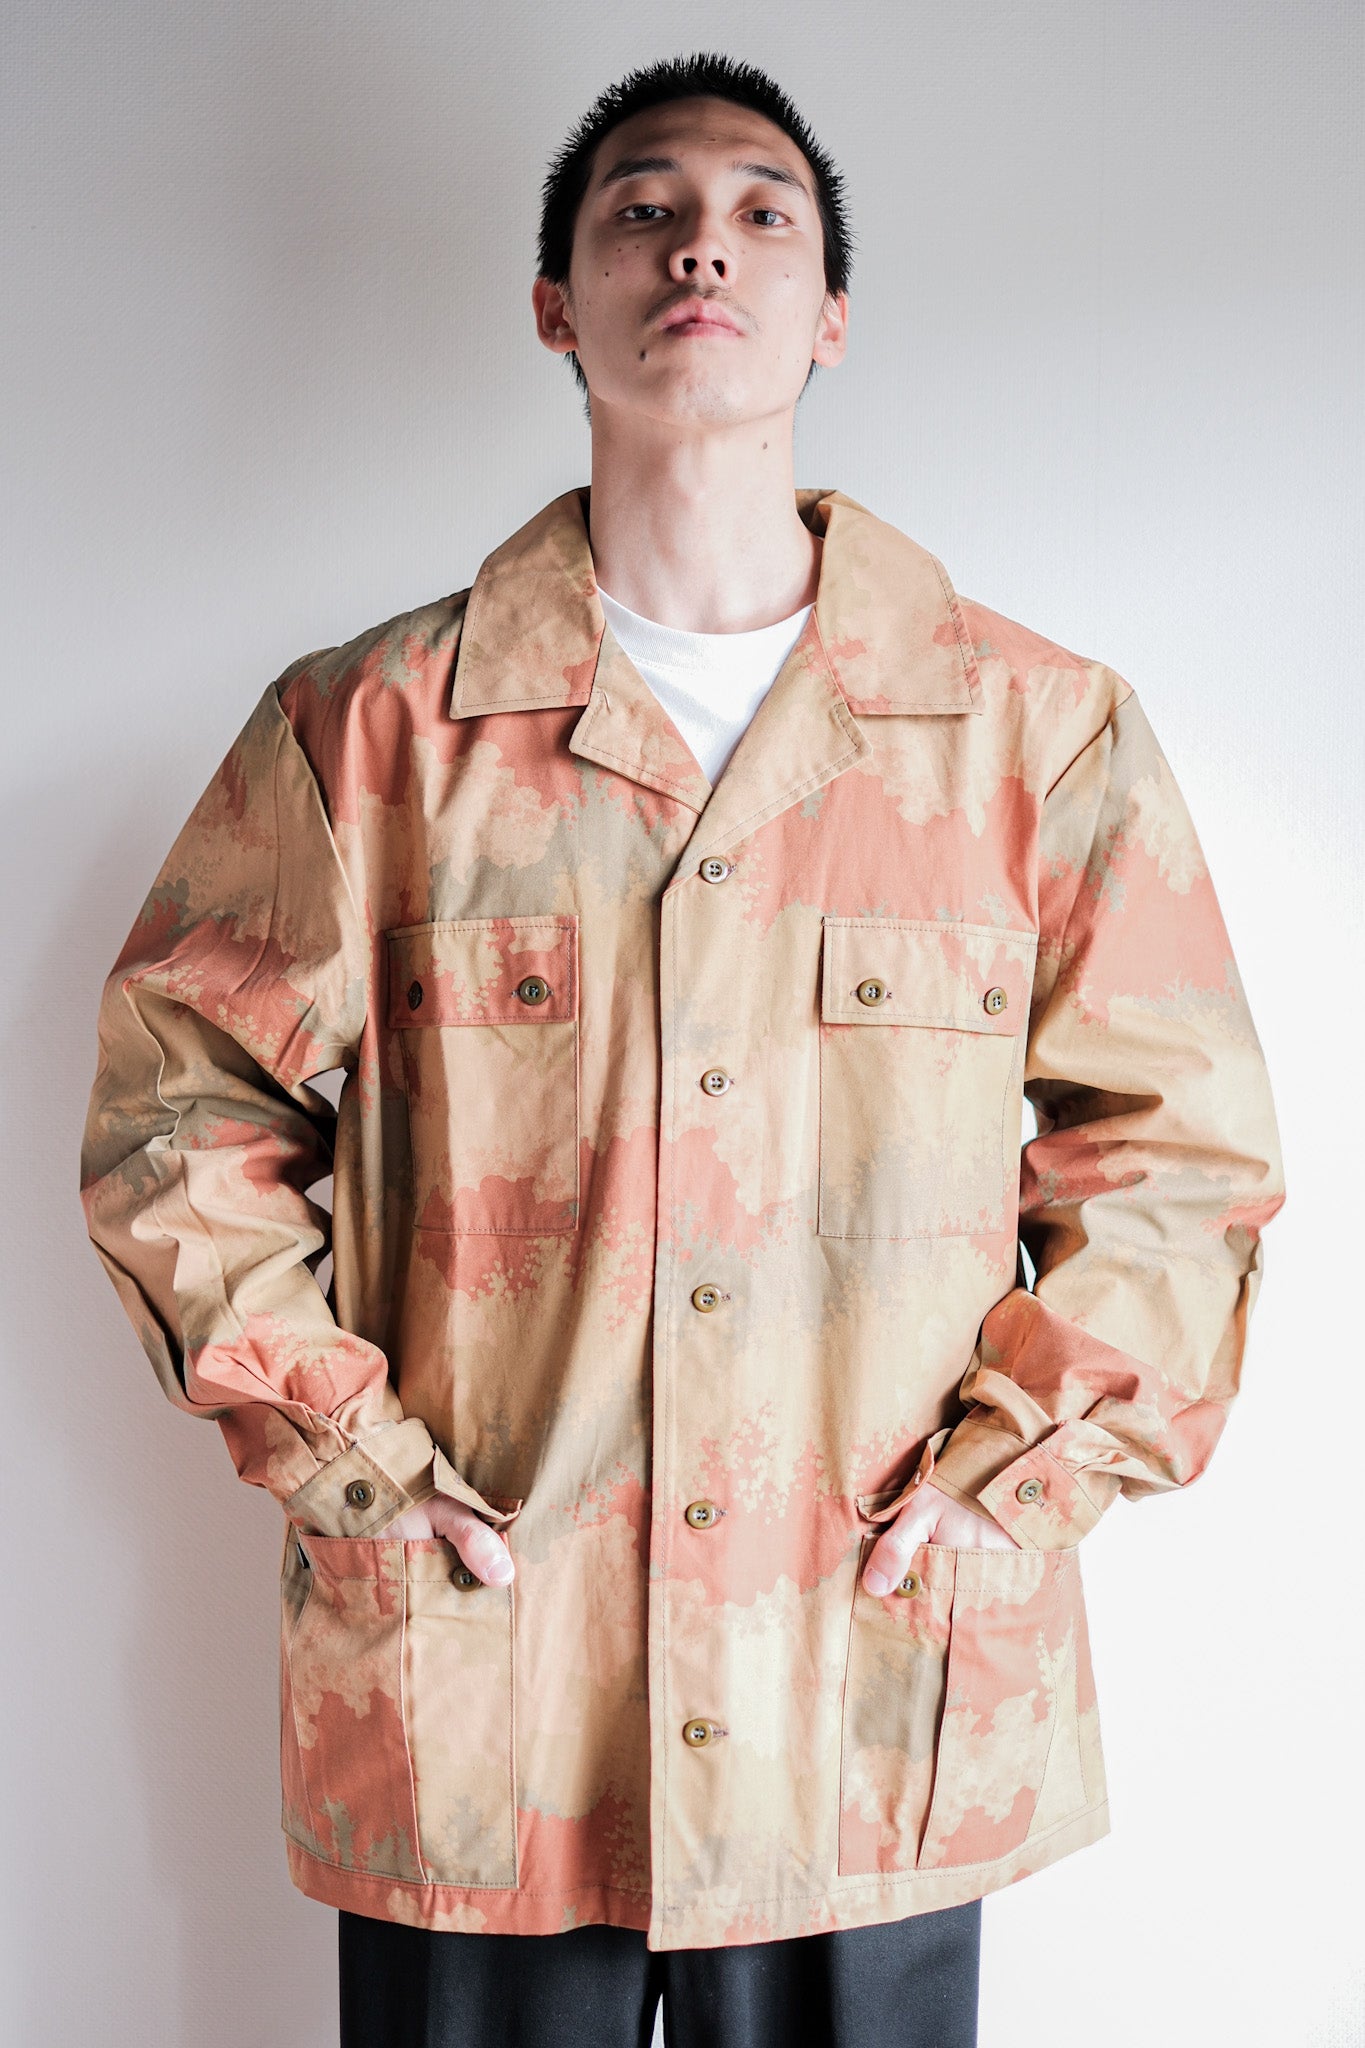 [〜90年代]捷克斯洛伐克軍隊沙漠模式偽裝野外夾克尺寸。52“測試樣本”“死庫存”